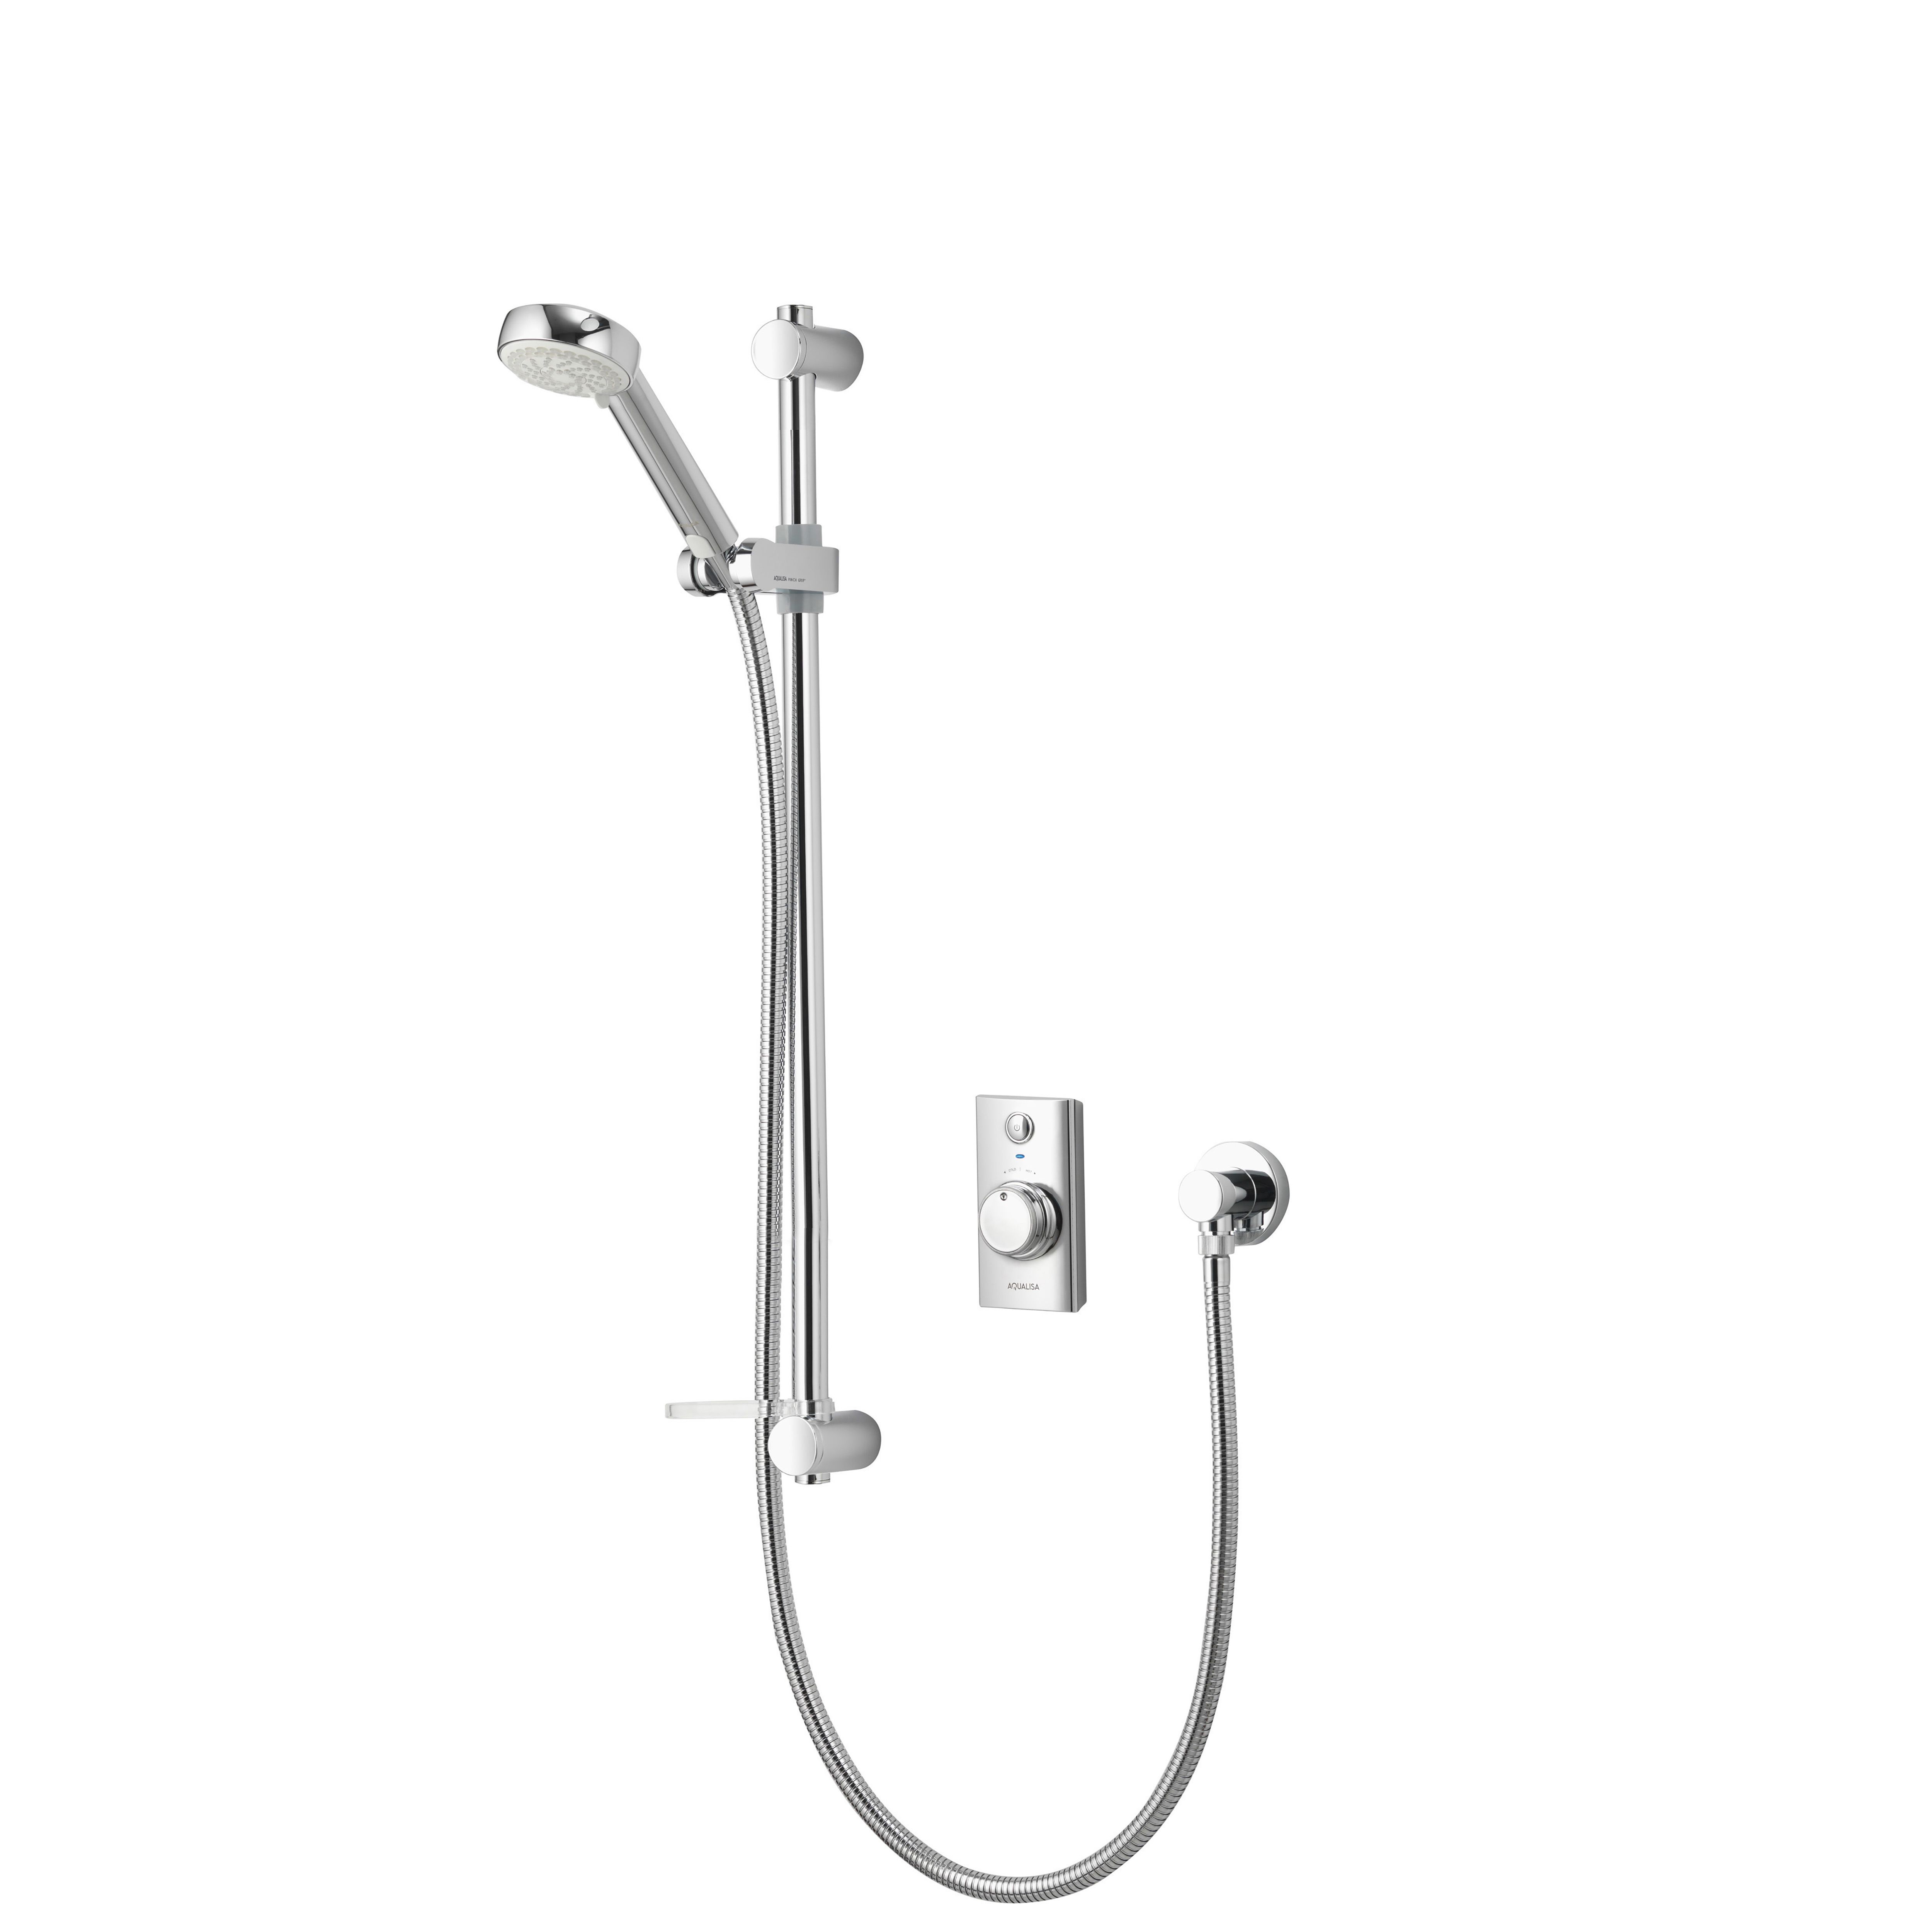 Aqualisa Visage Smart Concealed valve HP/Combi Wall fed Smart Digital Shower with Adjustable Shower head